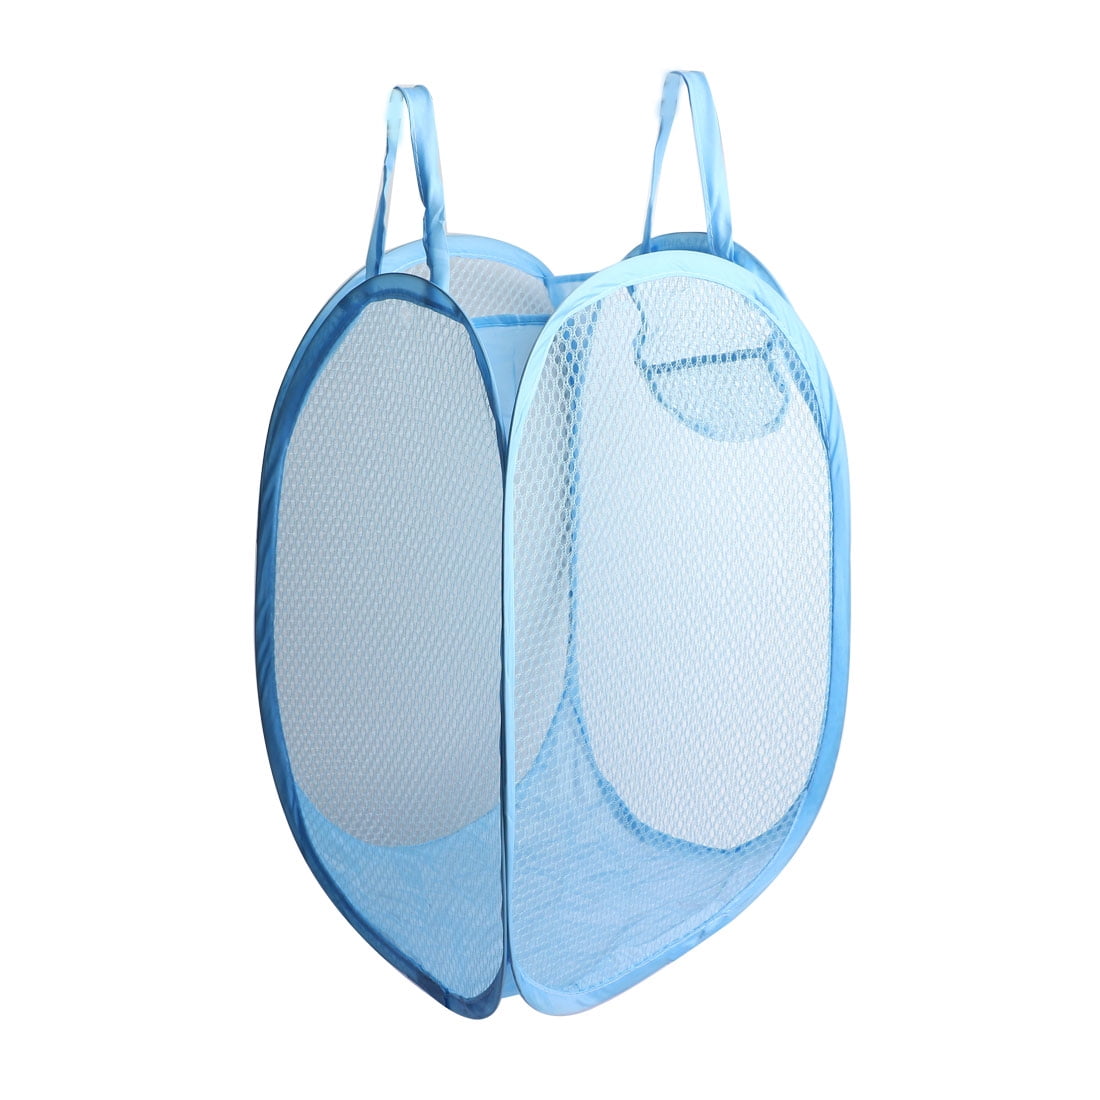 Unique Bargains Foldable Meshy Design Blue Laundry Hamper Clothes Basket